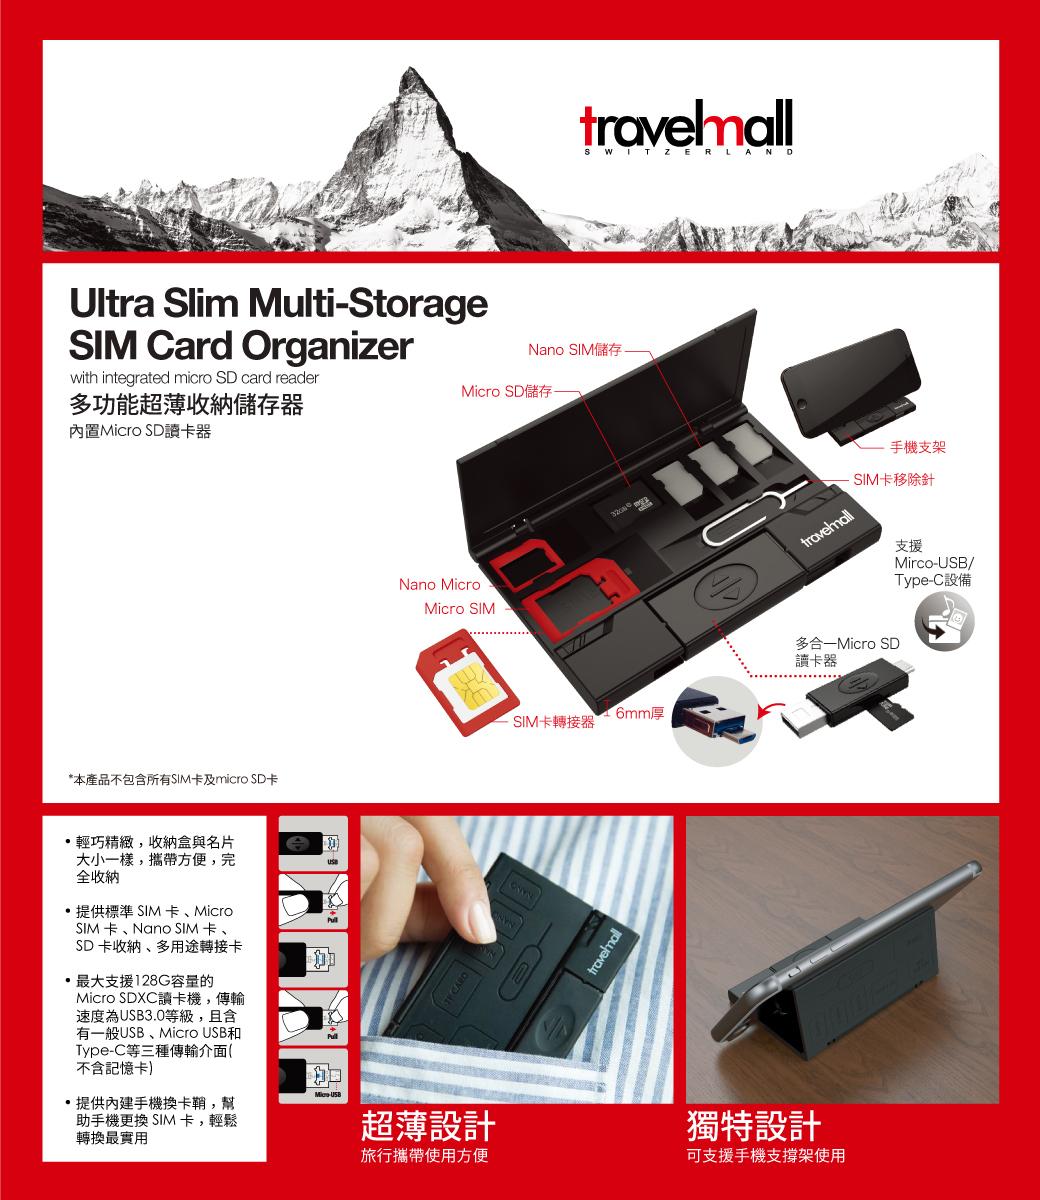 Travelmall 多功能超薄sim卡收納儲存器 Travlemall 台灣官方網站 來自瑞士精緻旅行配件